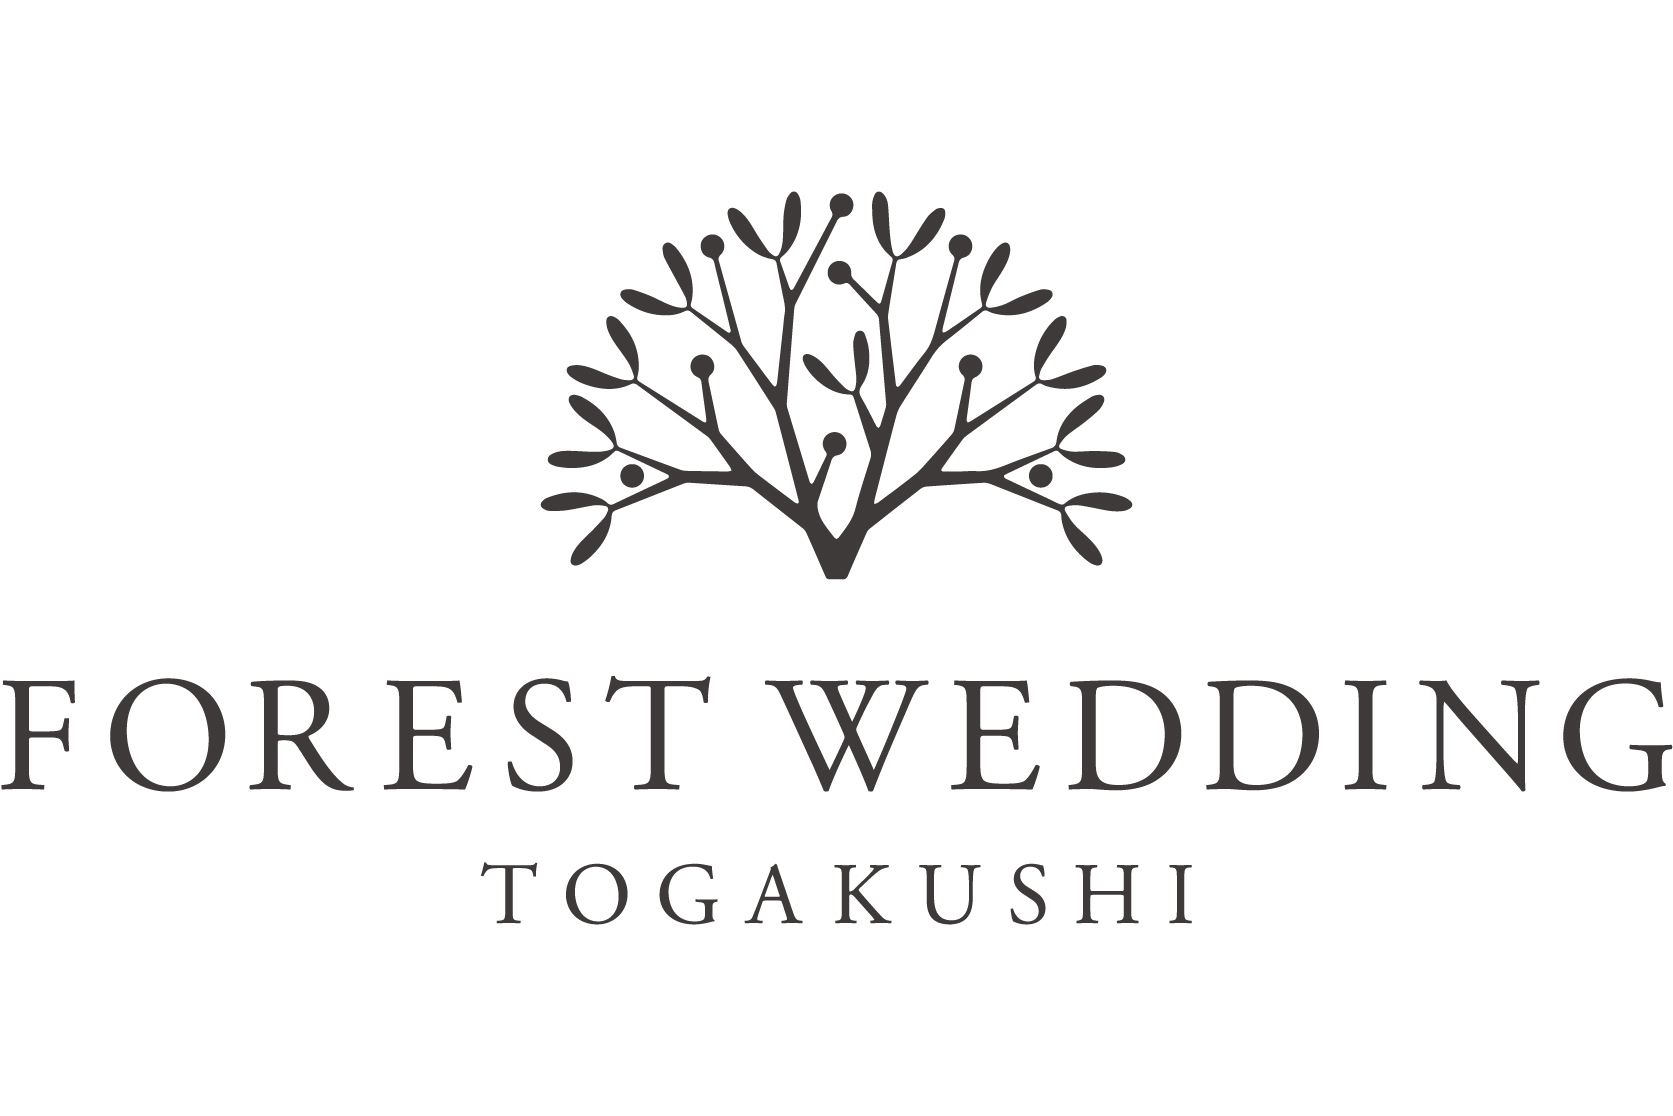 FOREST WEDDING TOGAKUSHI